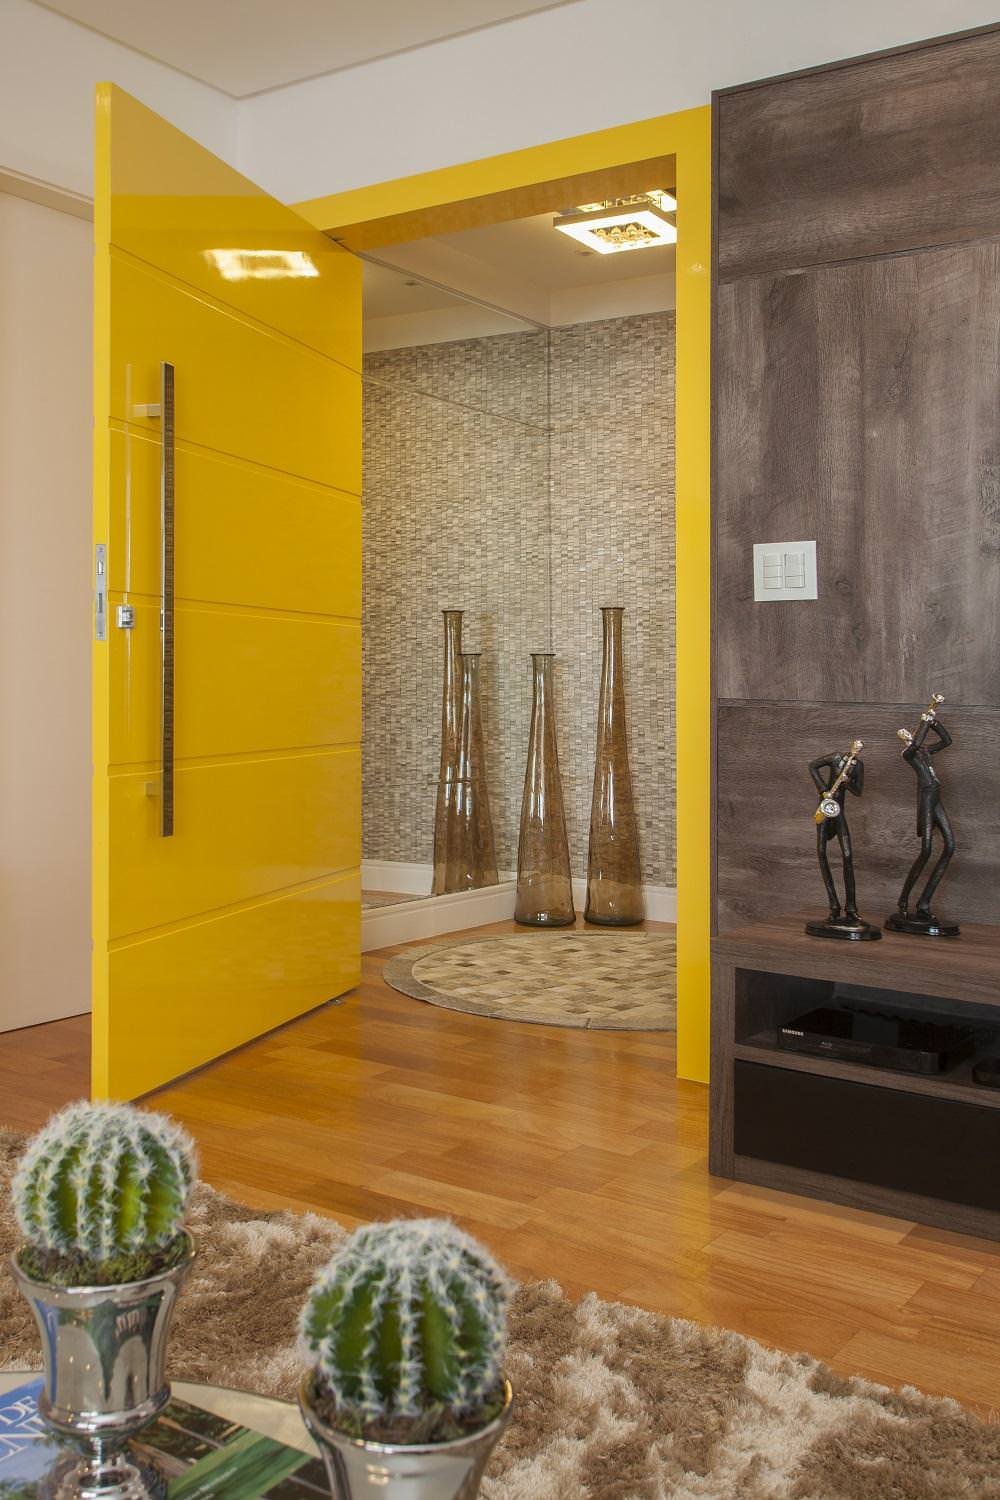 Porta moderna blindata, colore giallo sole - stile minimal moderno e gioioso - Articolo guida all'acquisto, porte blindate prezzi